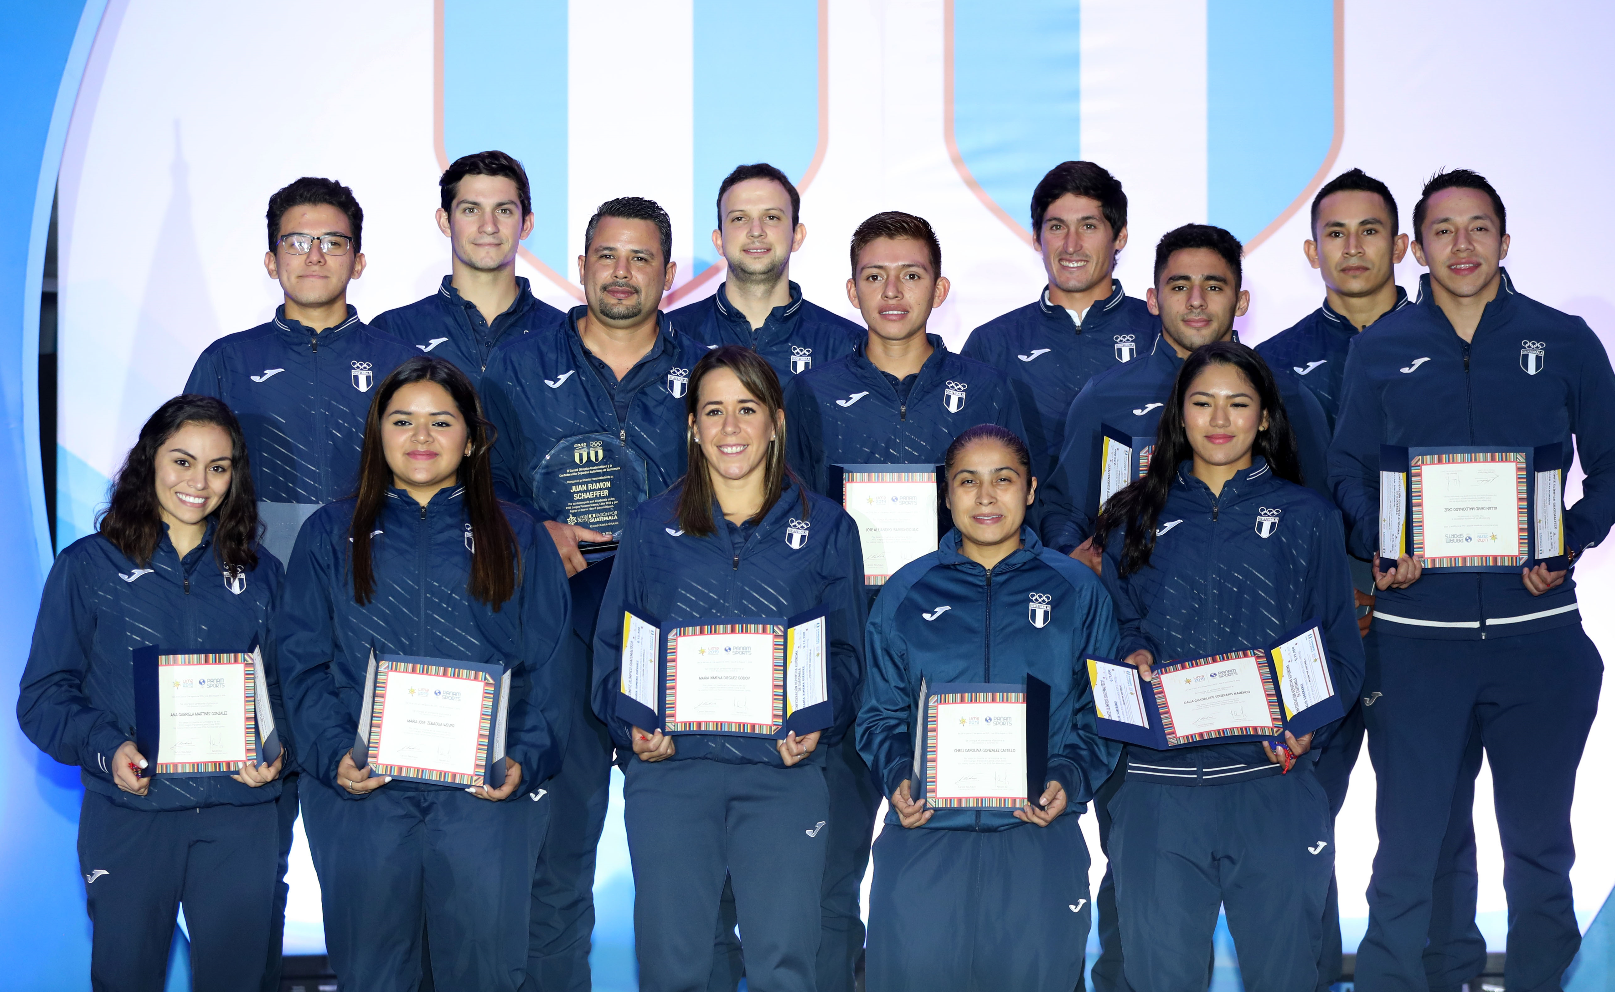 La delegación guatemalteca cosechó 19 preseas en los Panamericanos de Lima 2019. (Foto Prensa Libre: Carlos Vicente)